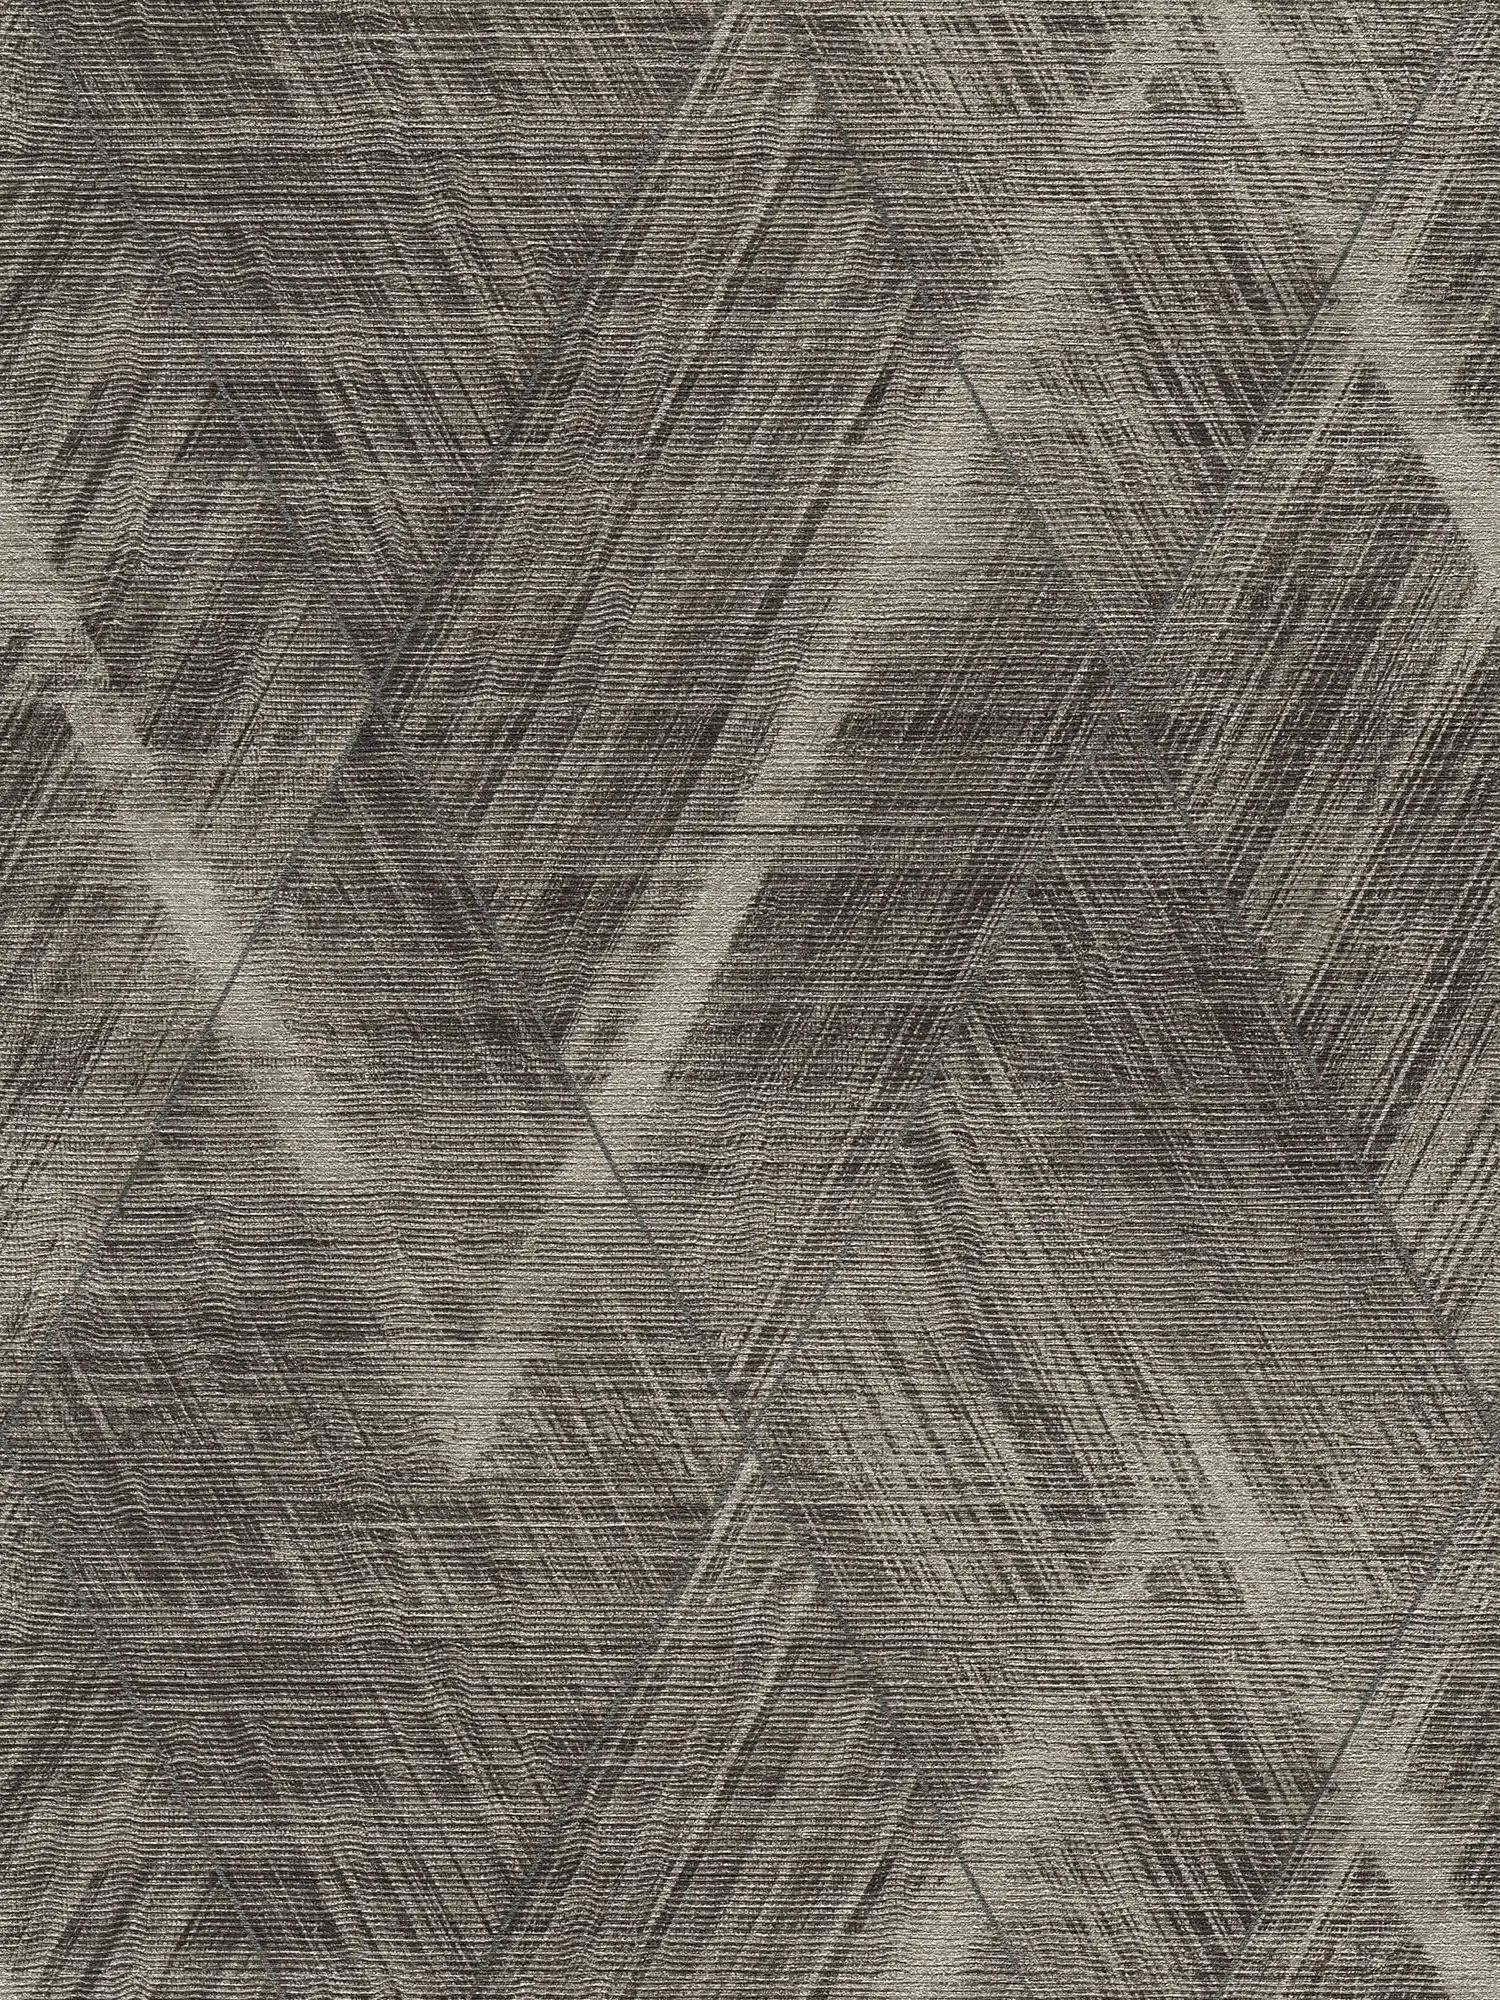         Textielachtig behangpapier met ruitmotief - metallic, grijs
    